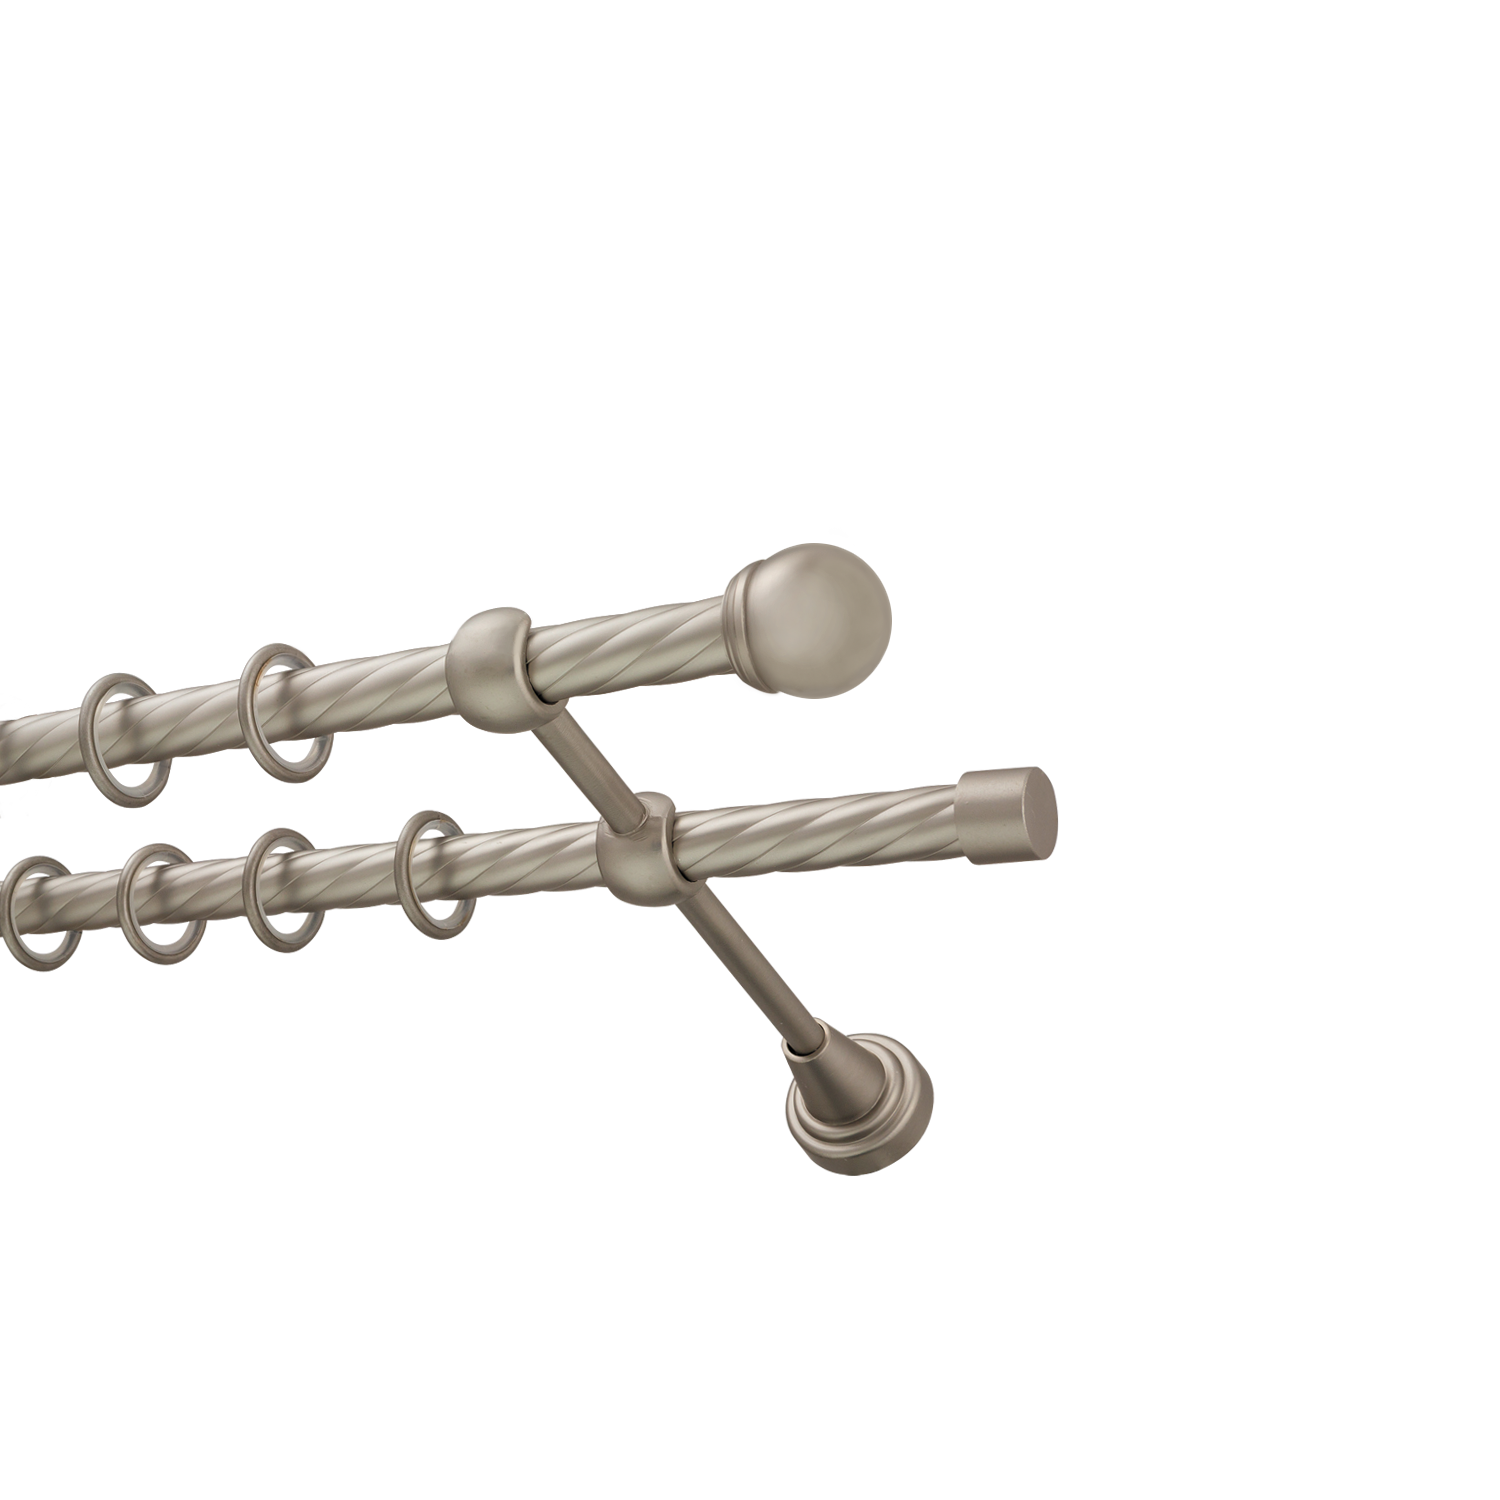 Металлический карниз для штор Вива, двухрядный 16/16 мм, сталь, витая штанга, длина 300 см